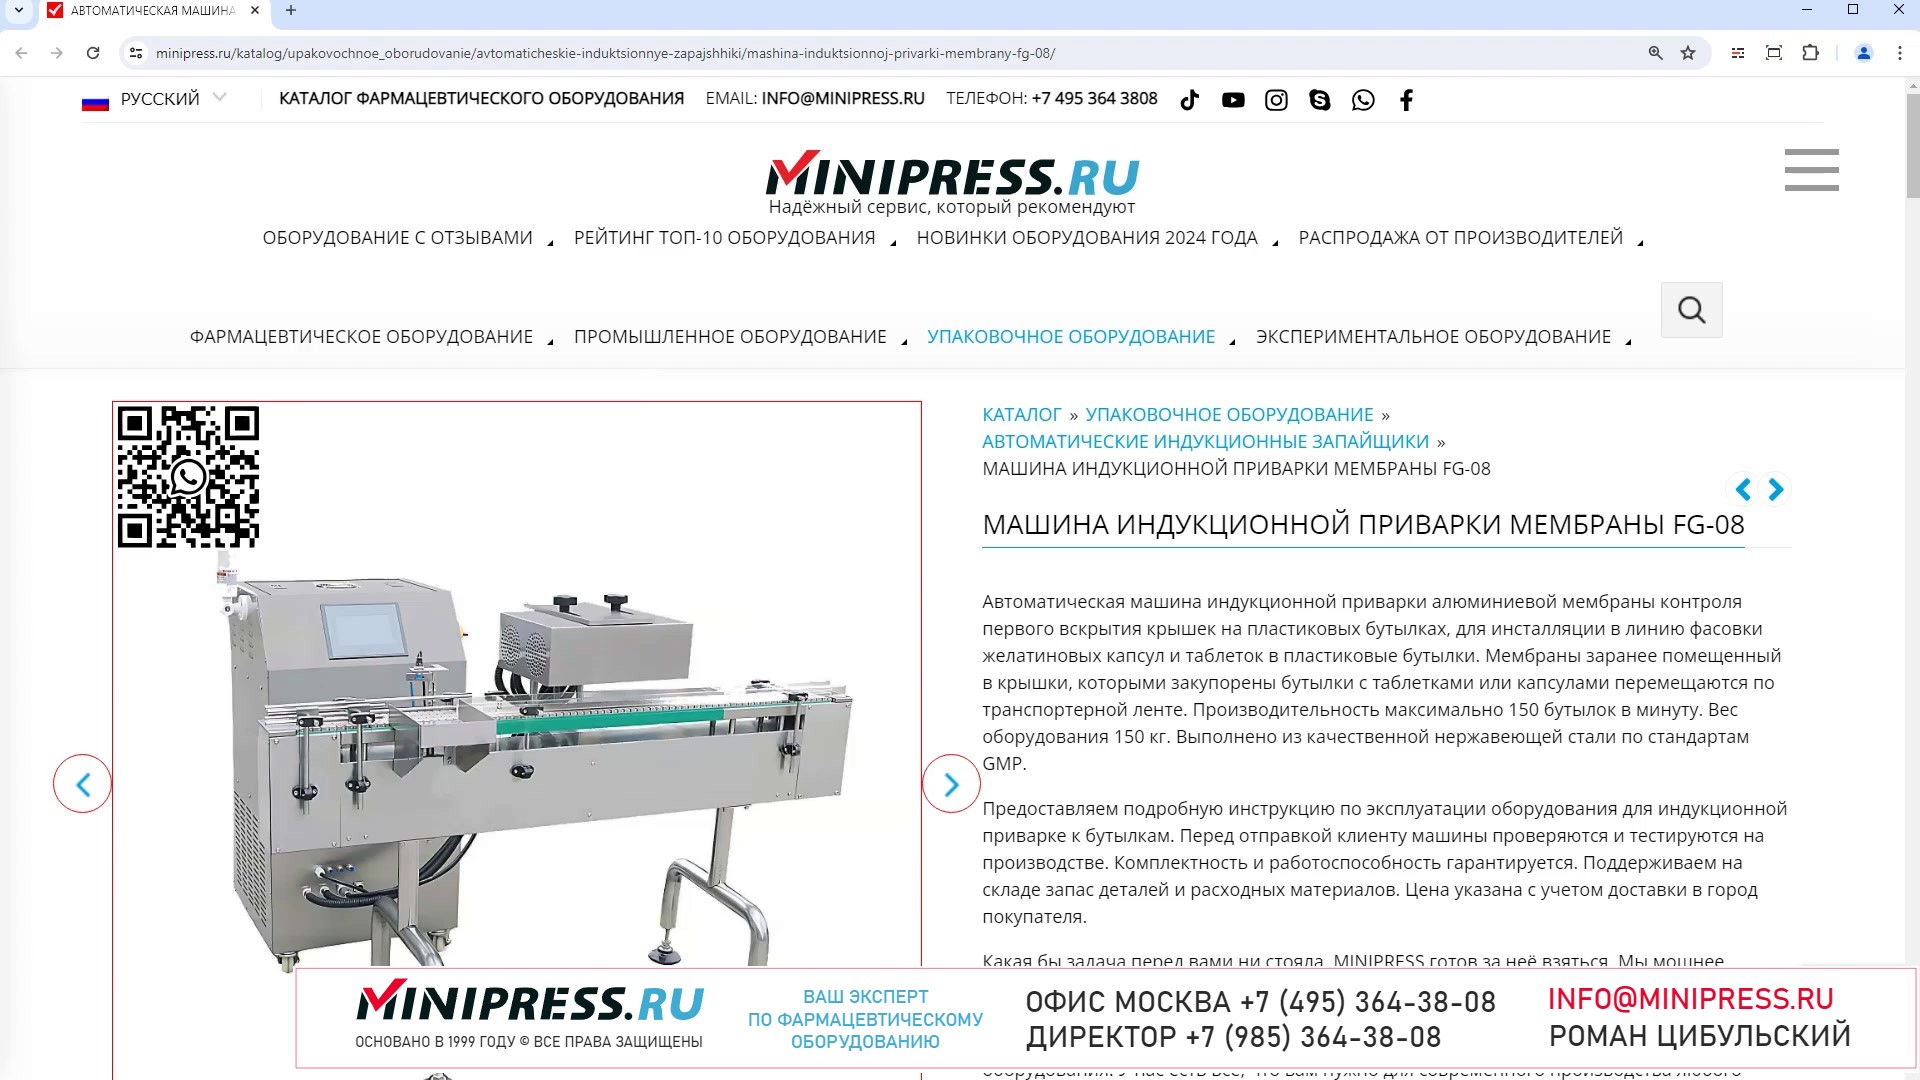 Minipress.ru Машина индукционной приварки мембраны FG-08